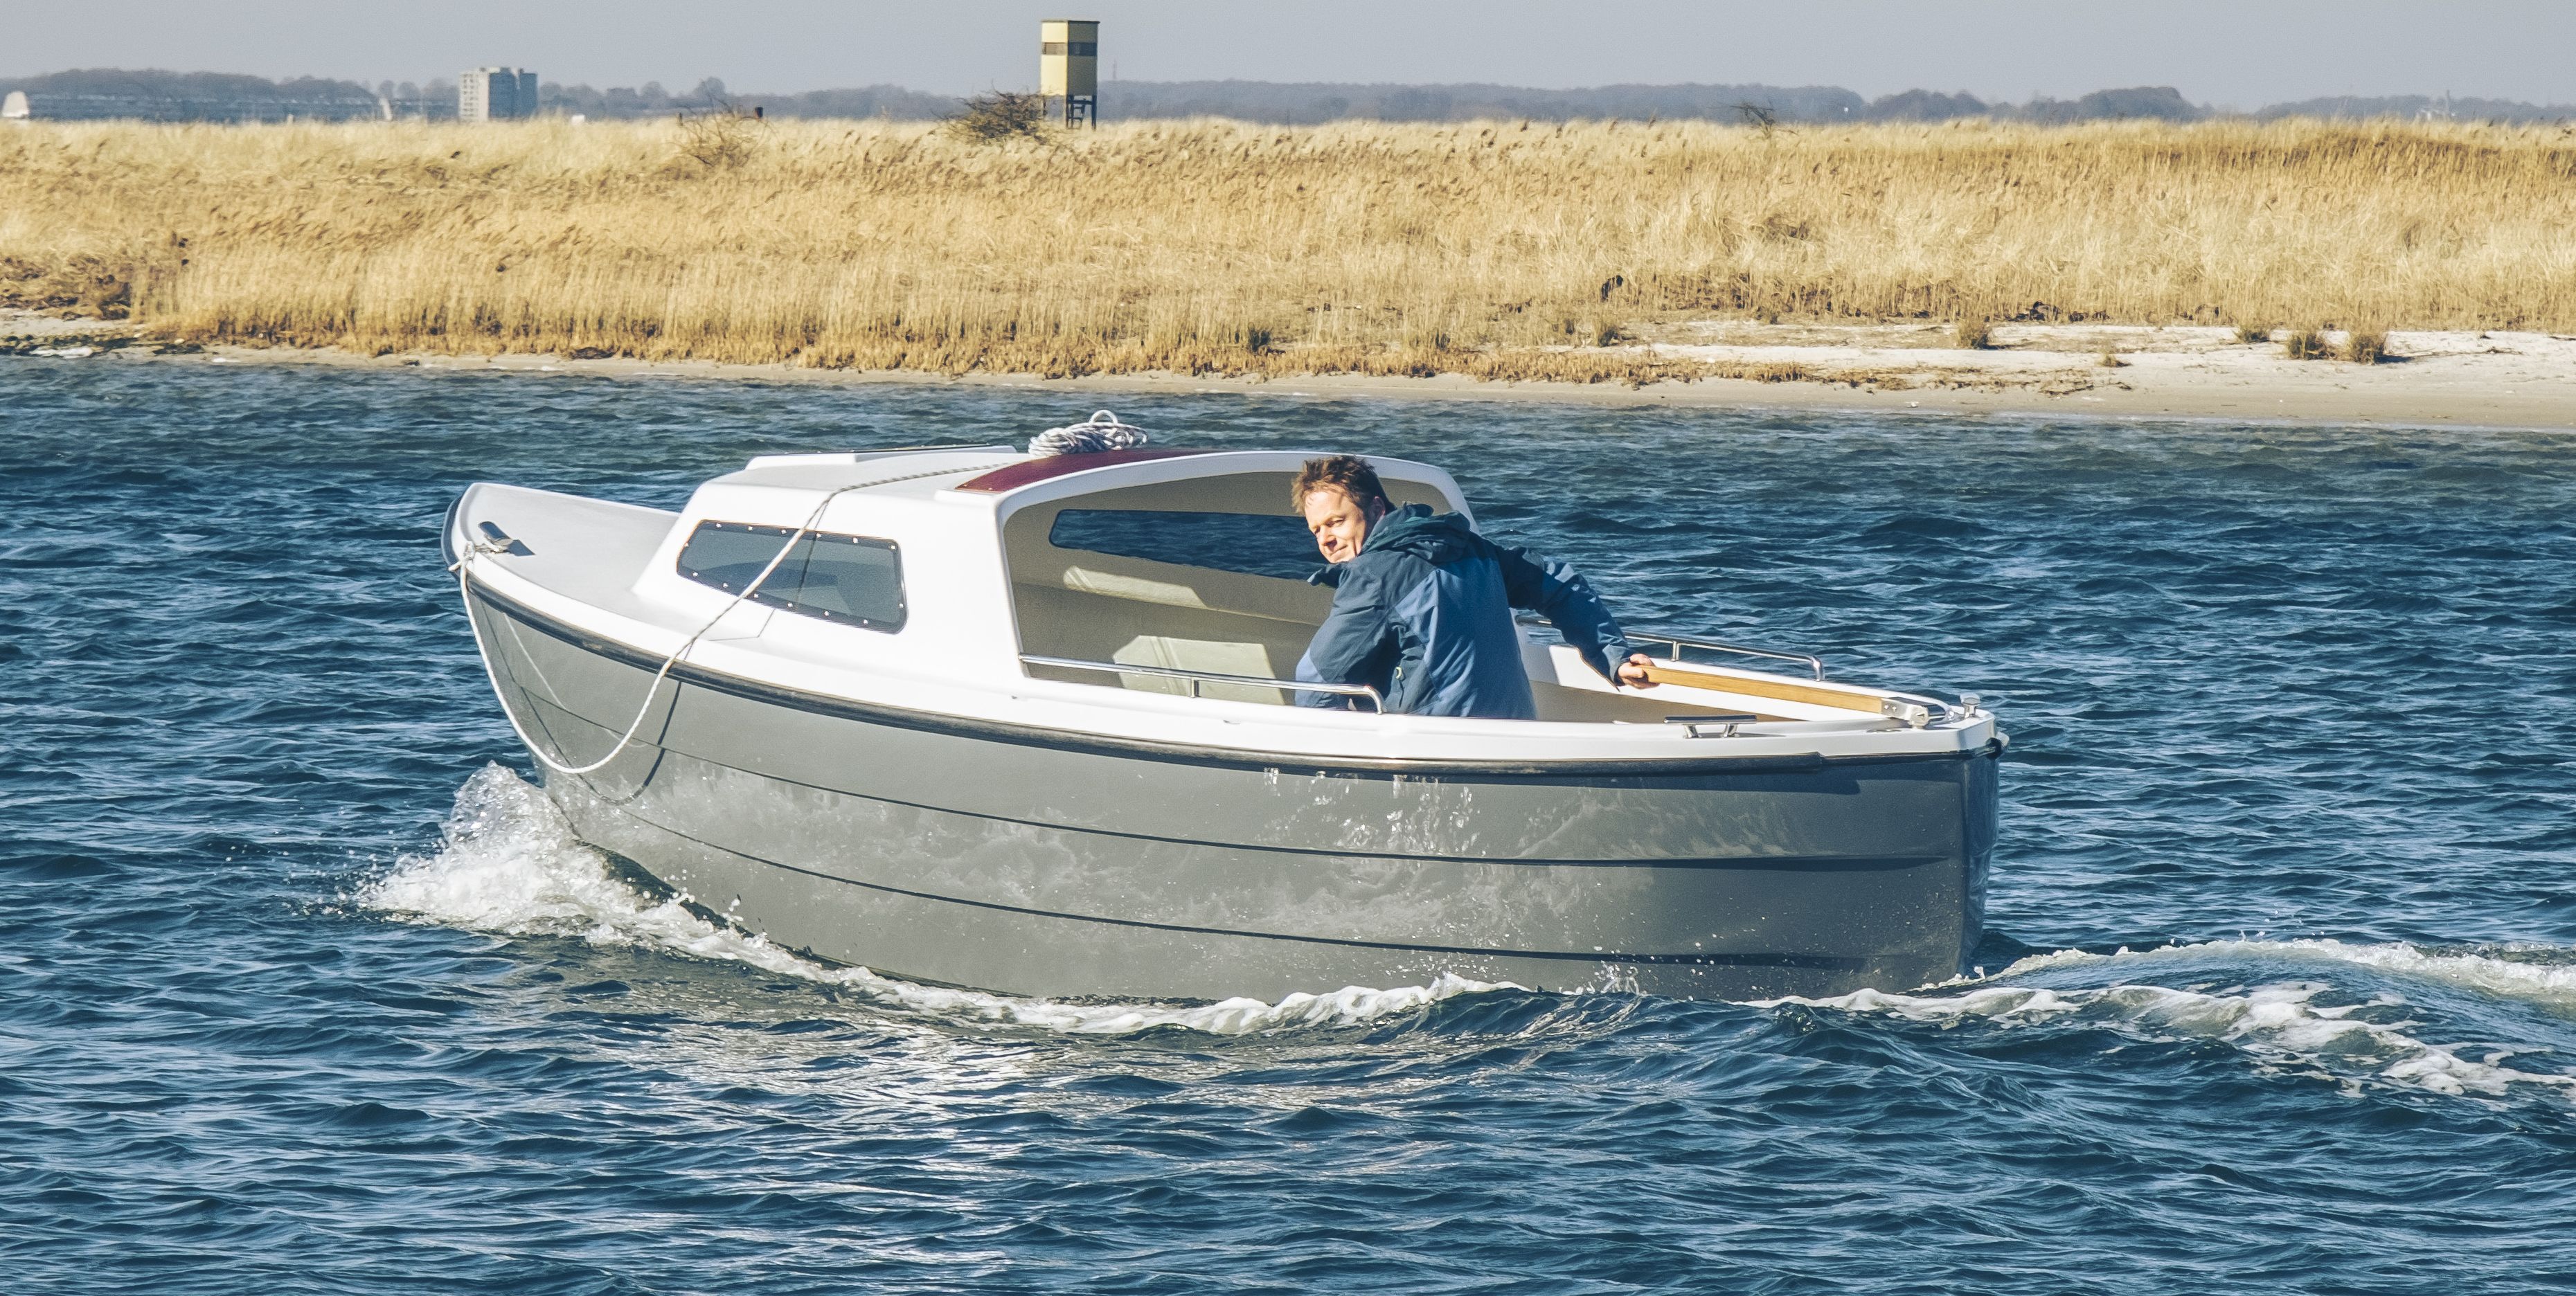 Vermietung Elektroboot | Angelboot Danel 505 (5,05m x 2m mit Kojen und Verdeck) - 1 Tag